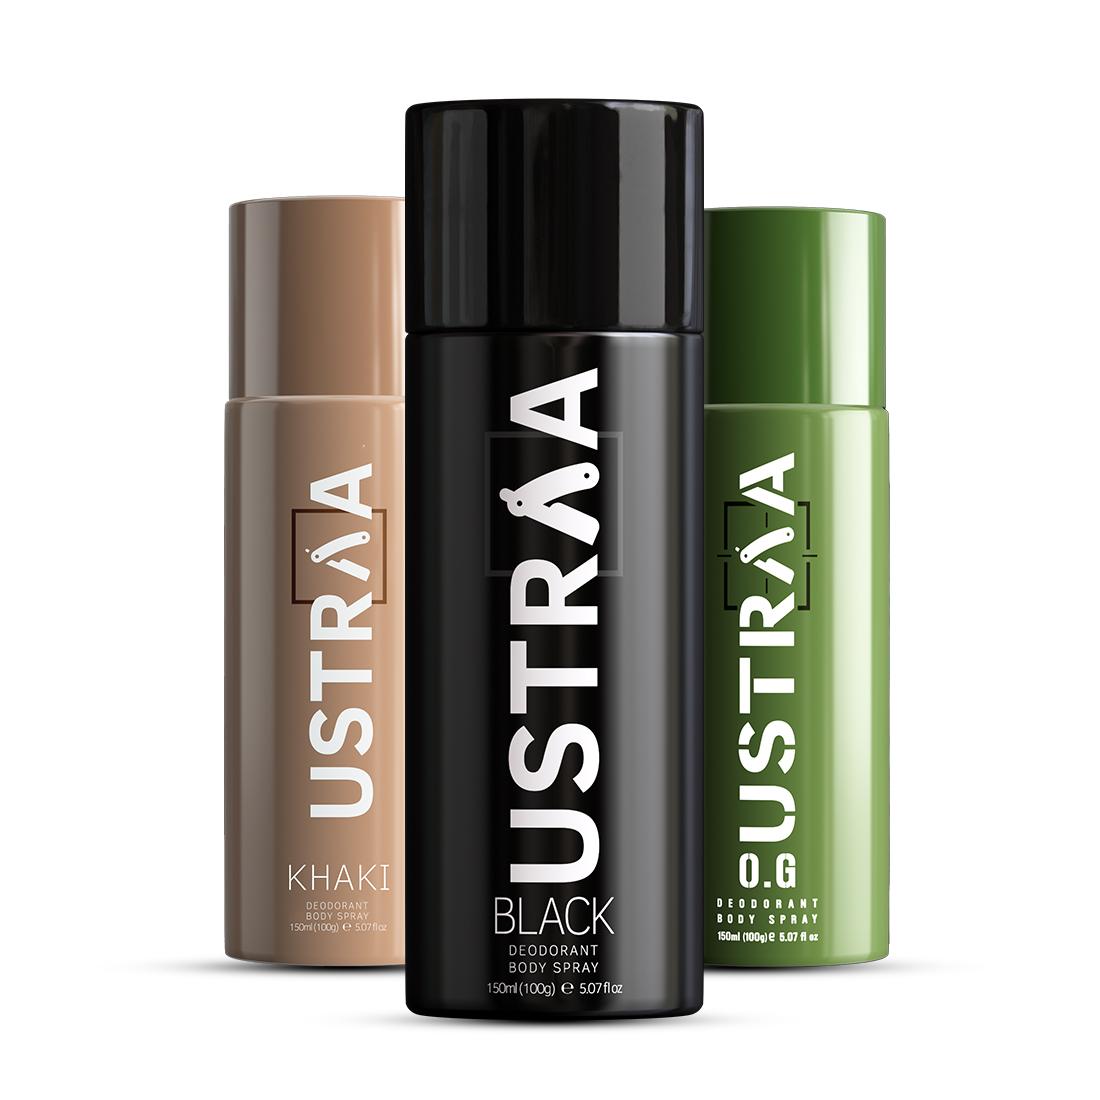 Ustraa Deodorant Body Spray - 150 ml - Black,O.G & Khaki  - Set of 3